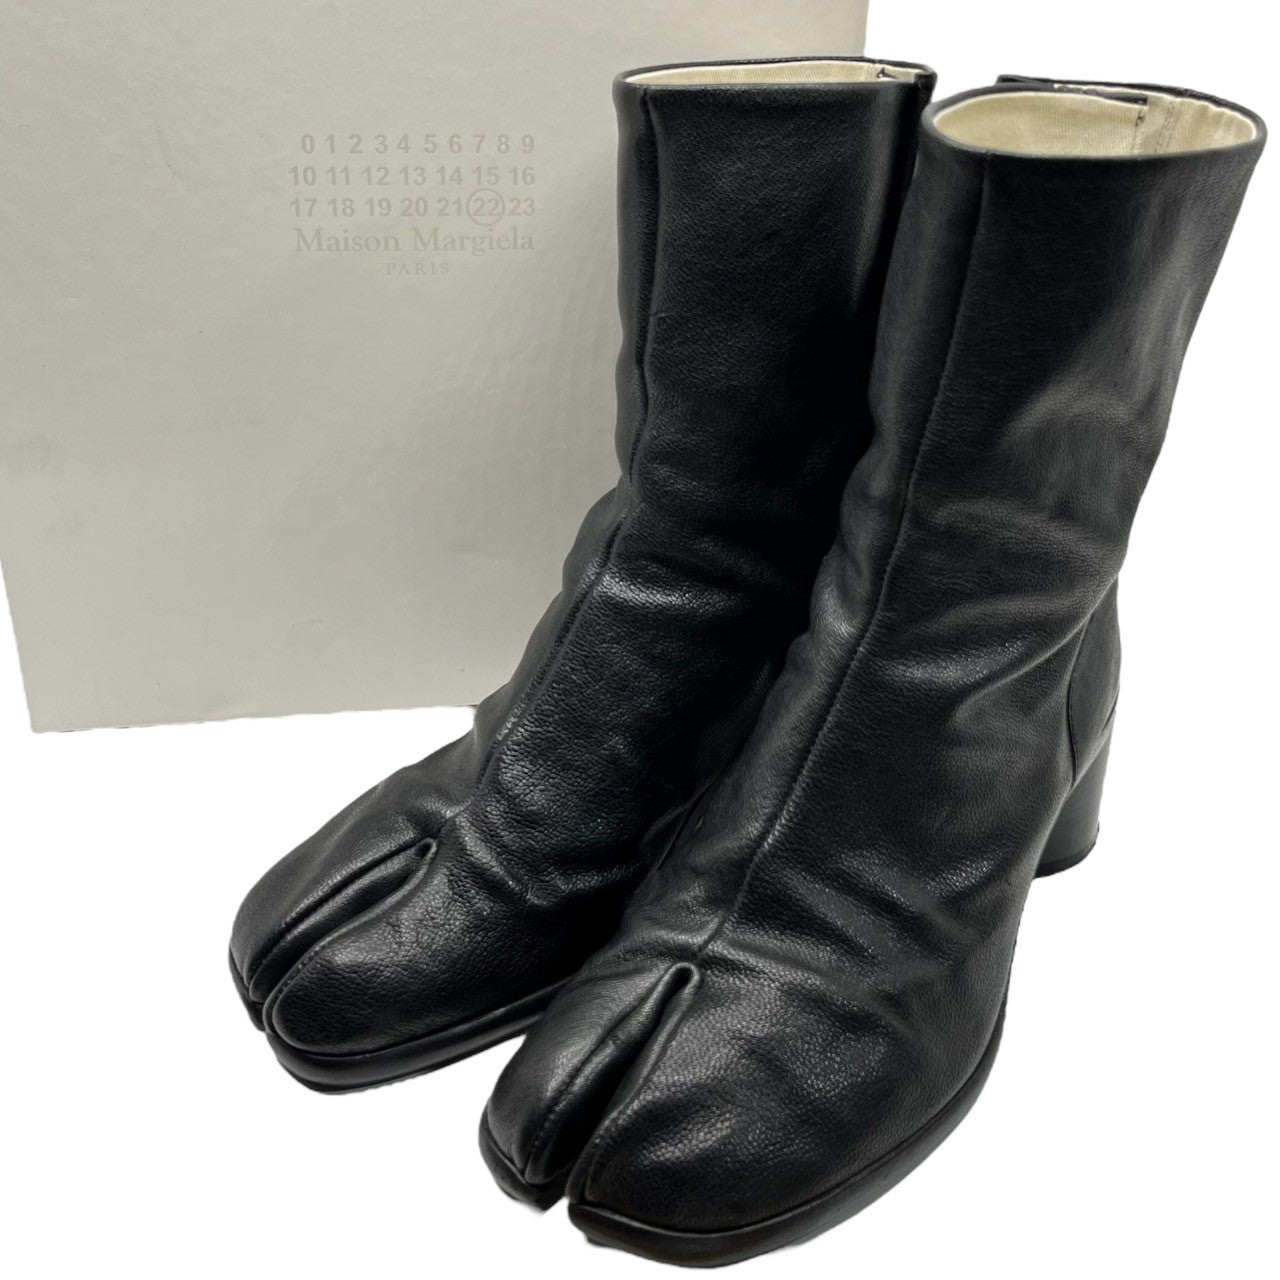 Maison Margiela tabi boots size39ご確認よろしくお願いします